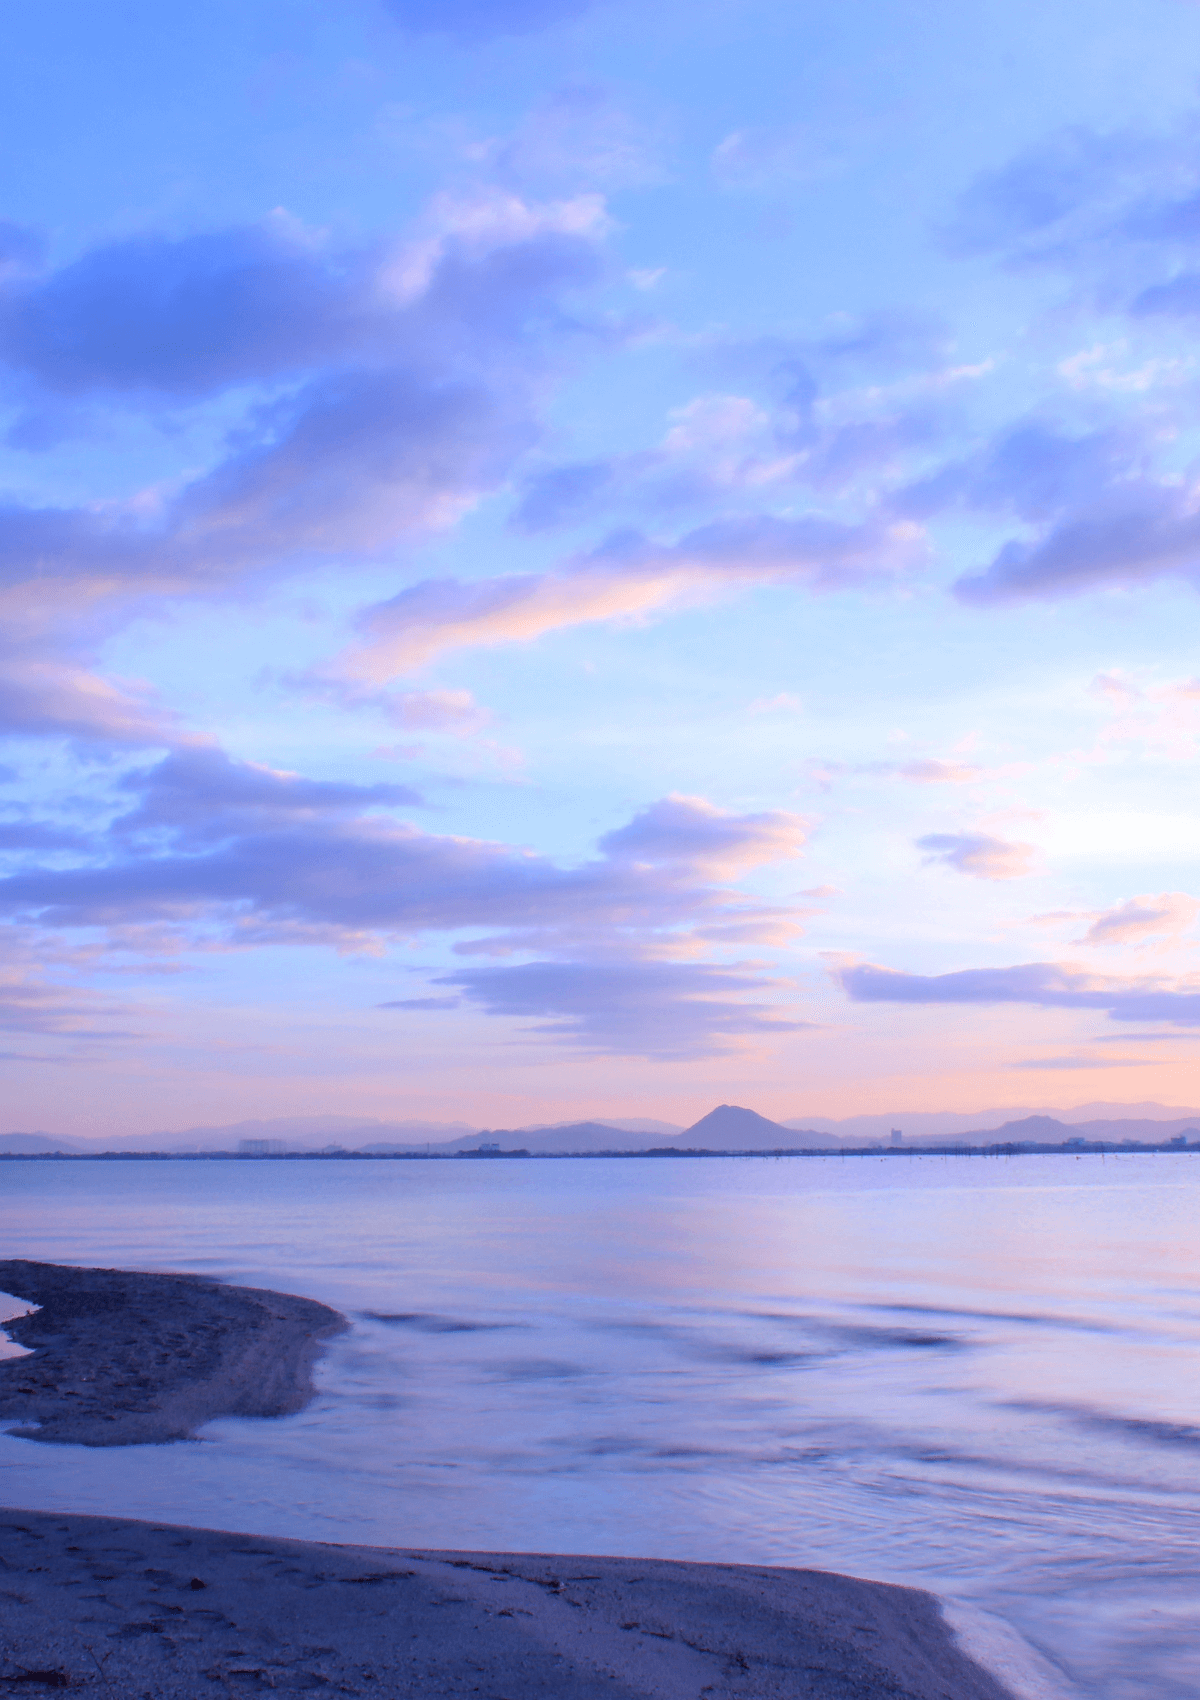 reasons to visit Lake Biwa